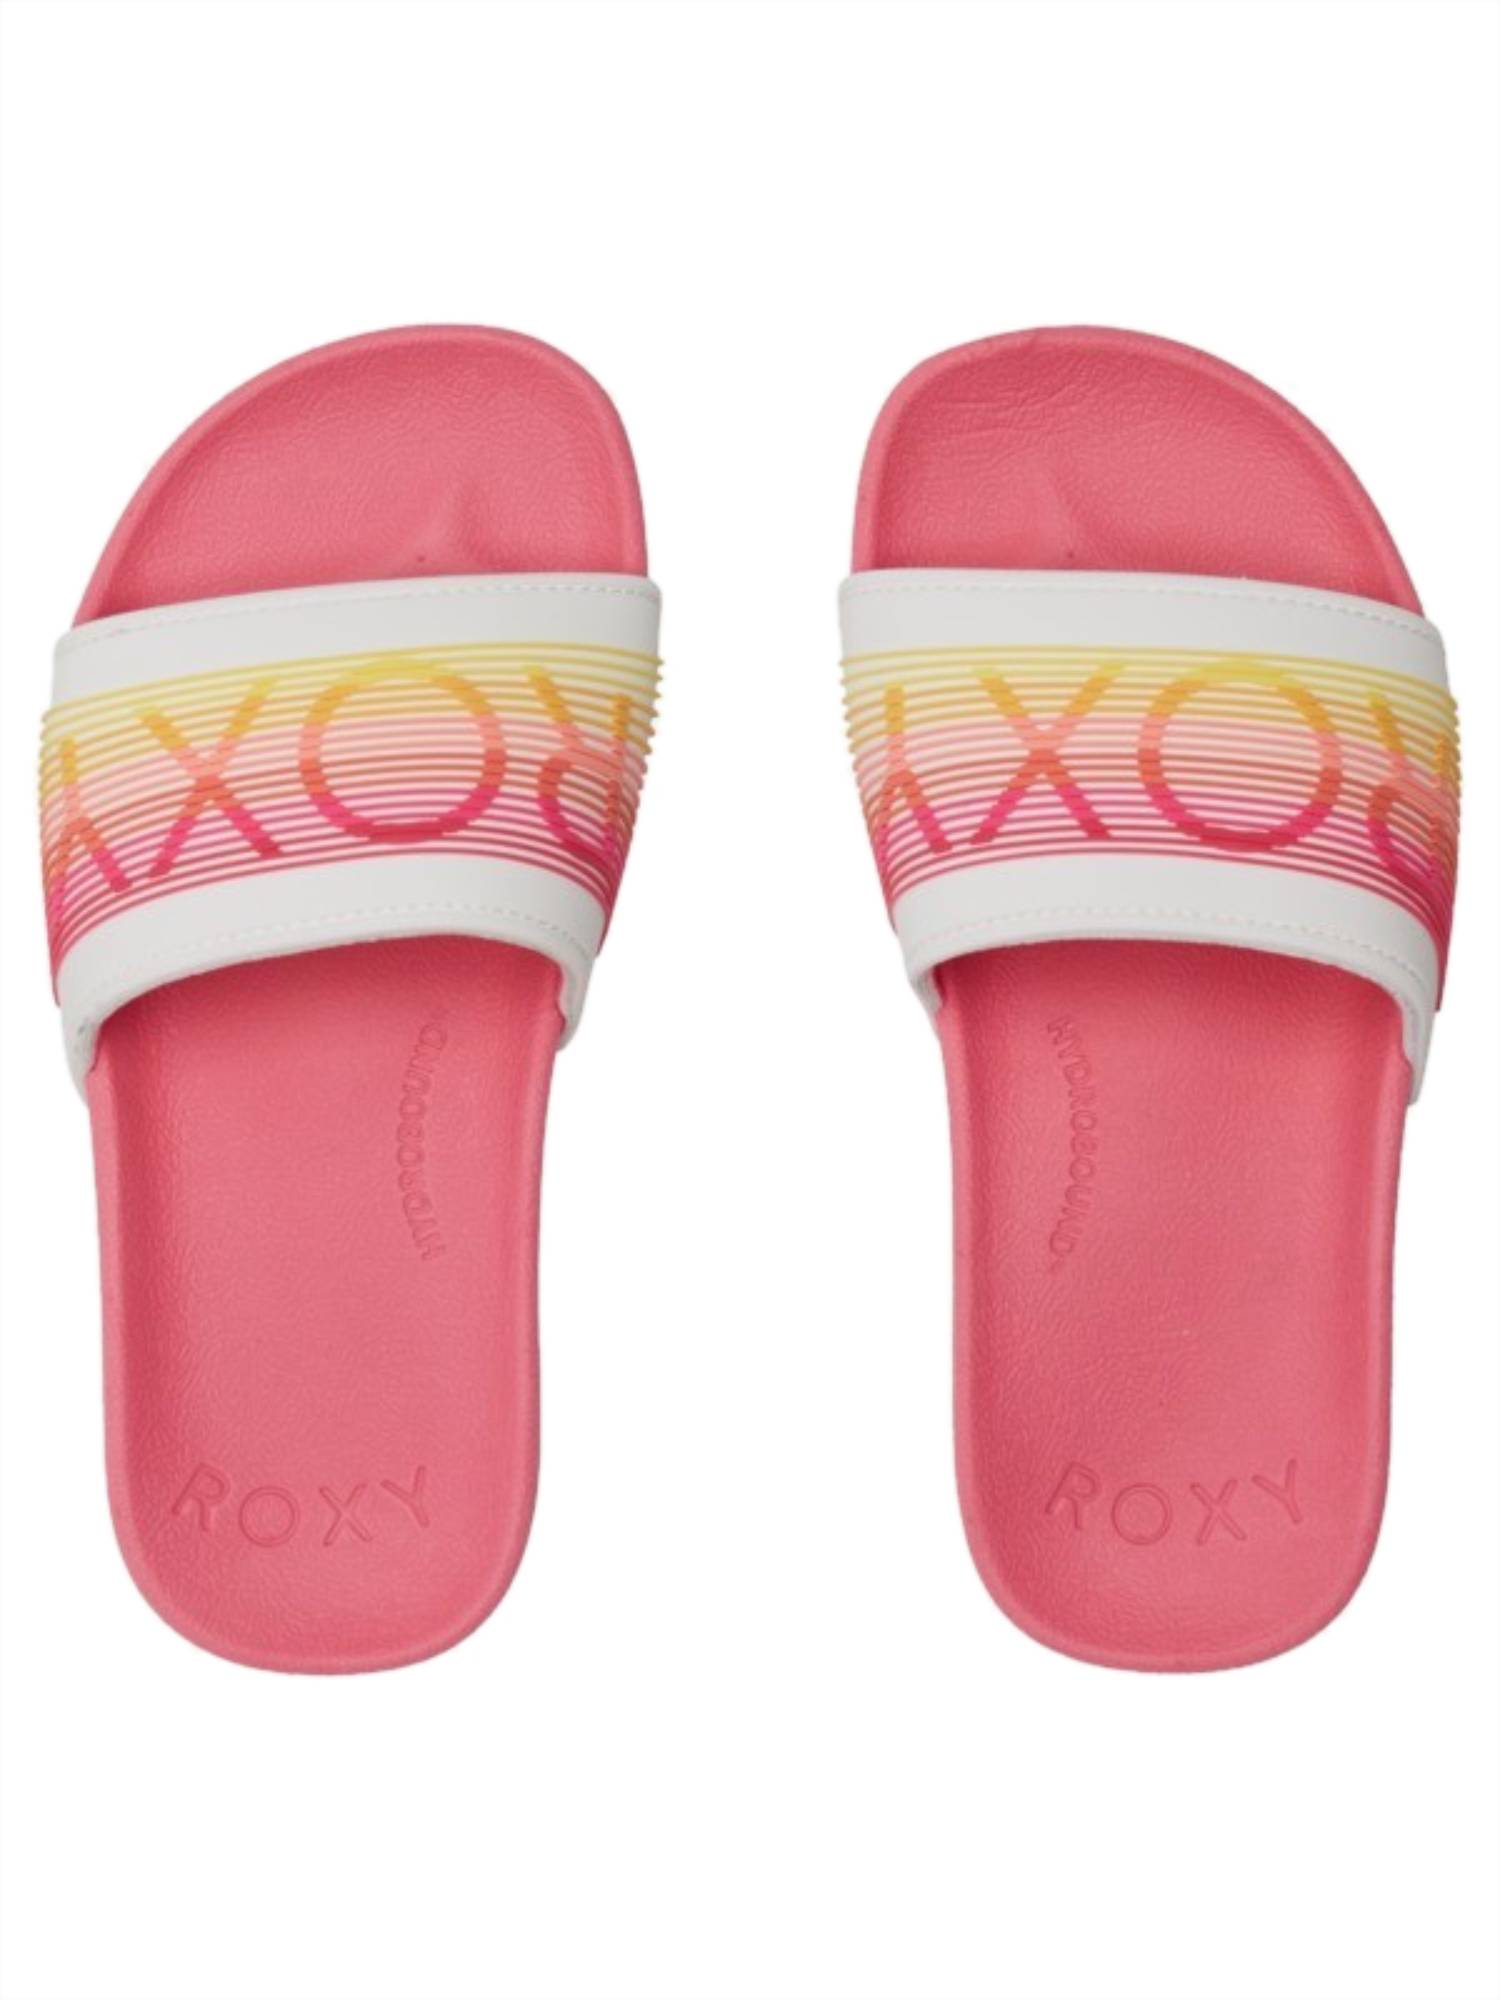 Roxy Slippy LX Girls Sandal PN1-Pink 1 13 C